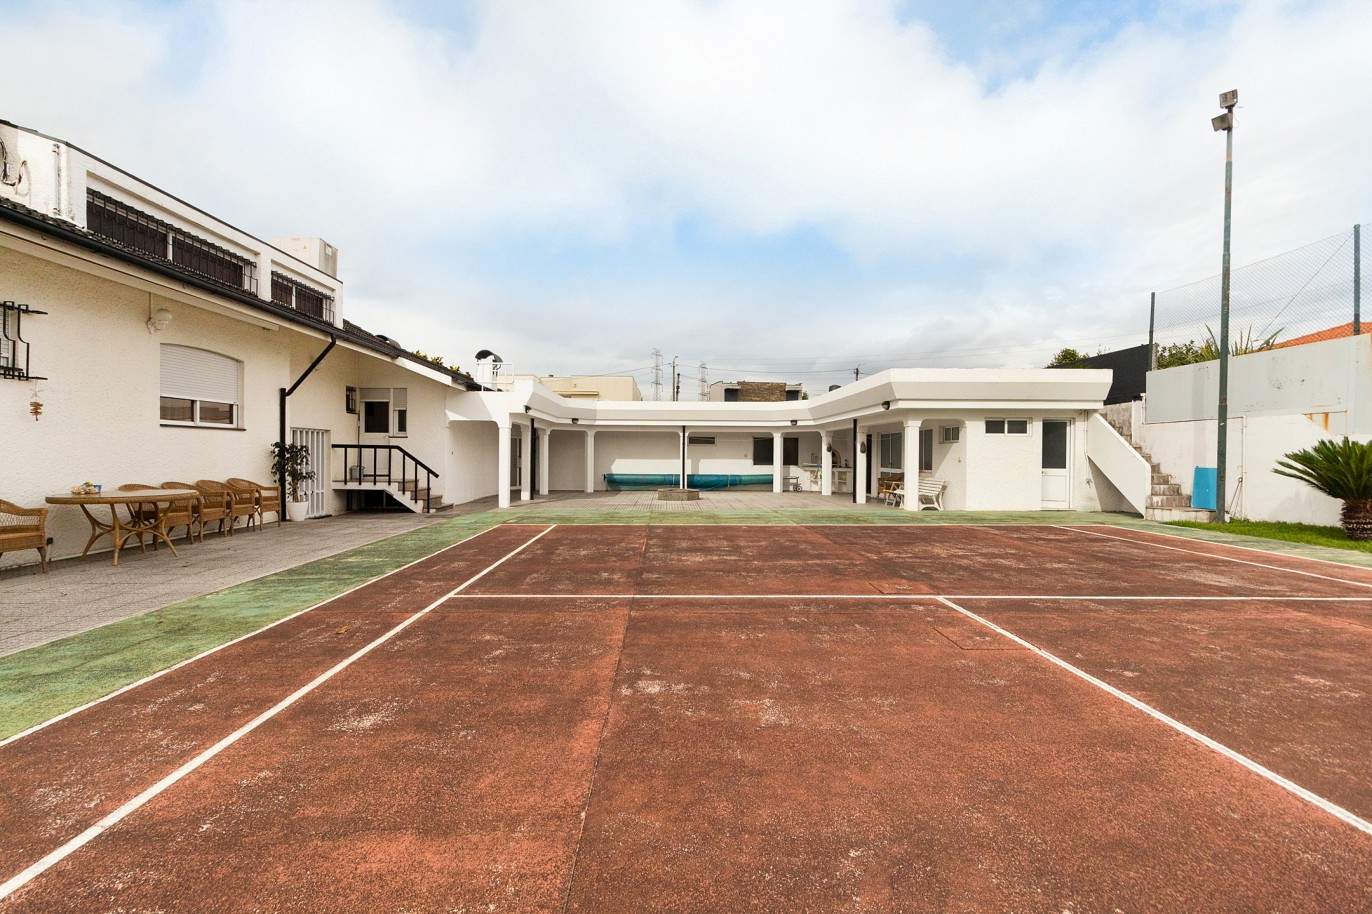 Moradia V4 com piscina, court de ténis e jardim, para venda, na Maia_210633